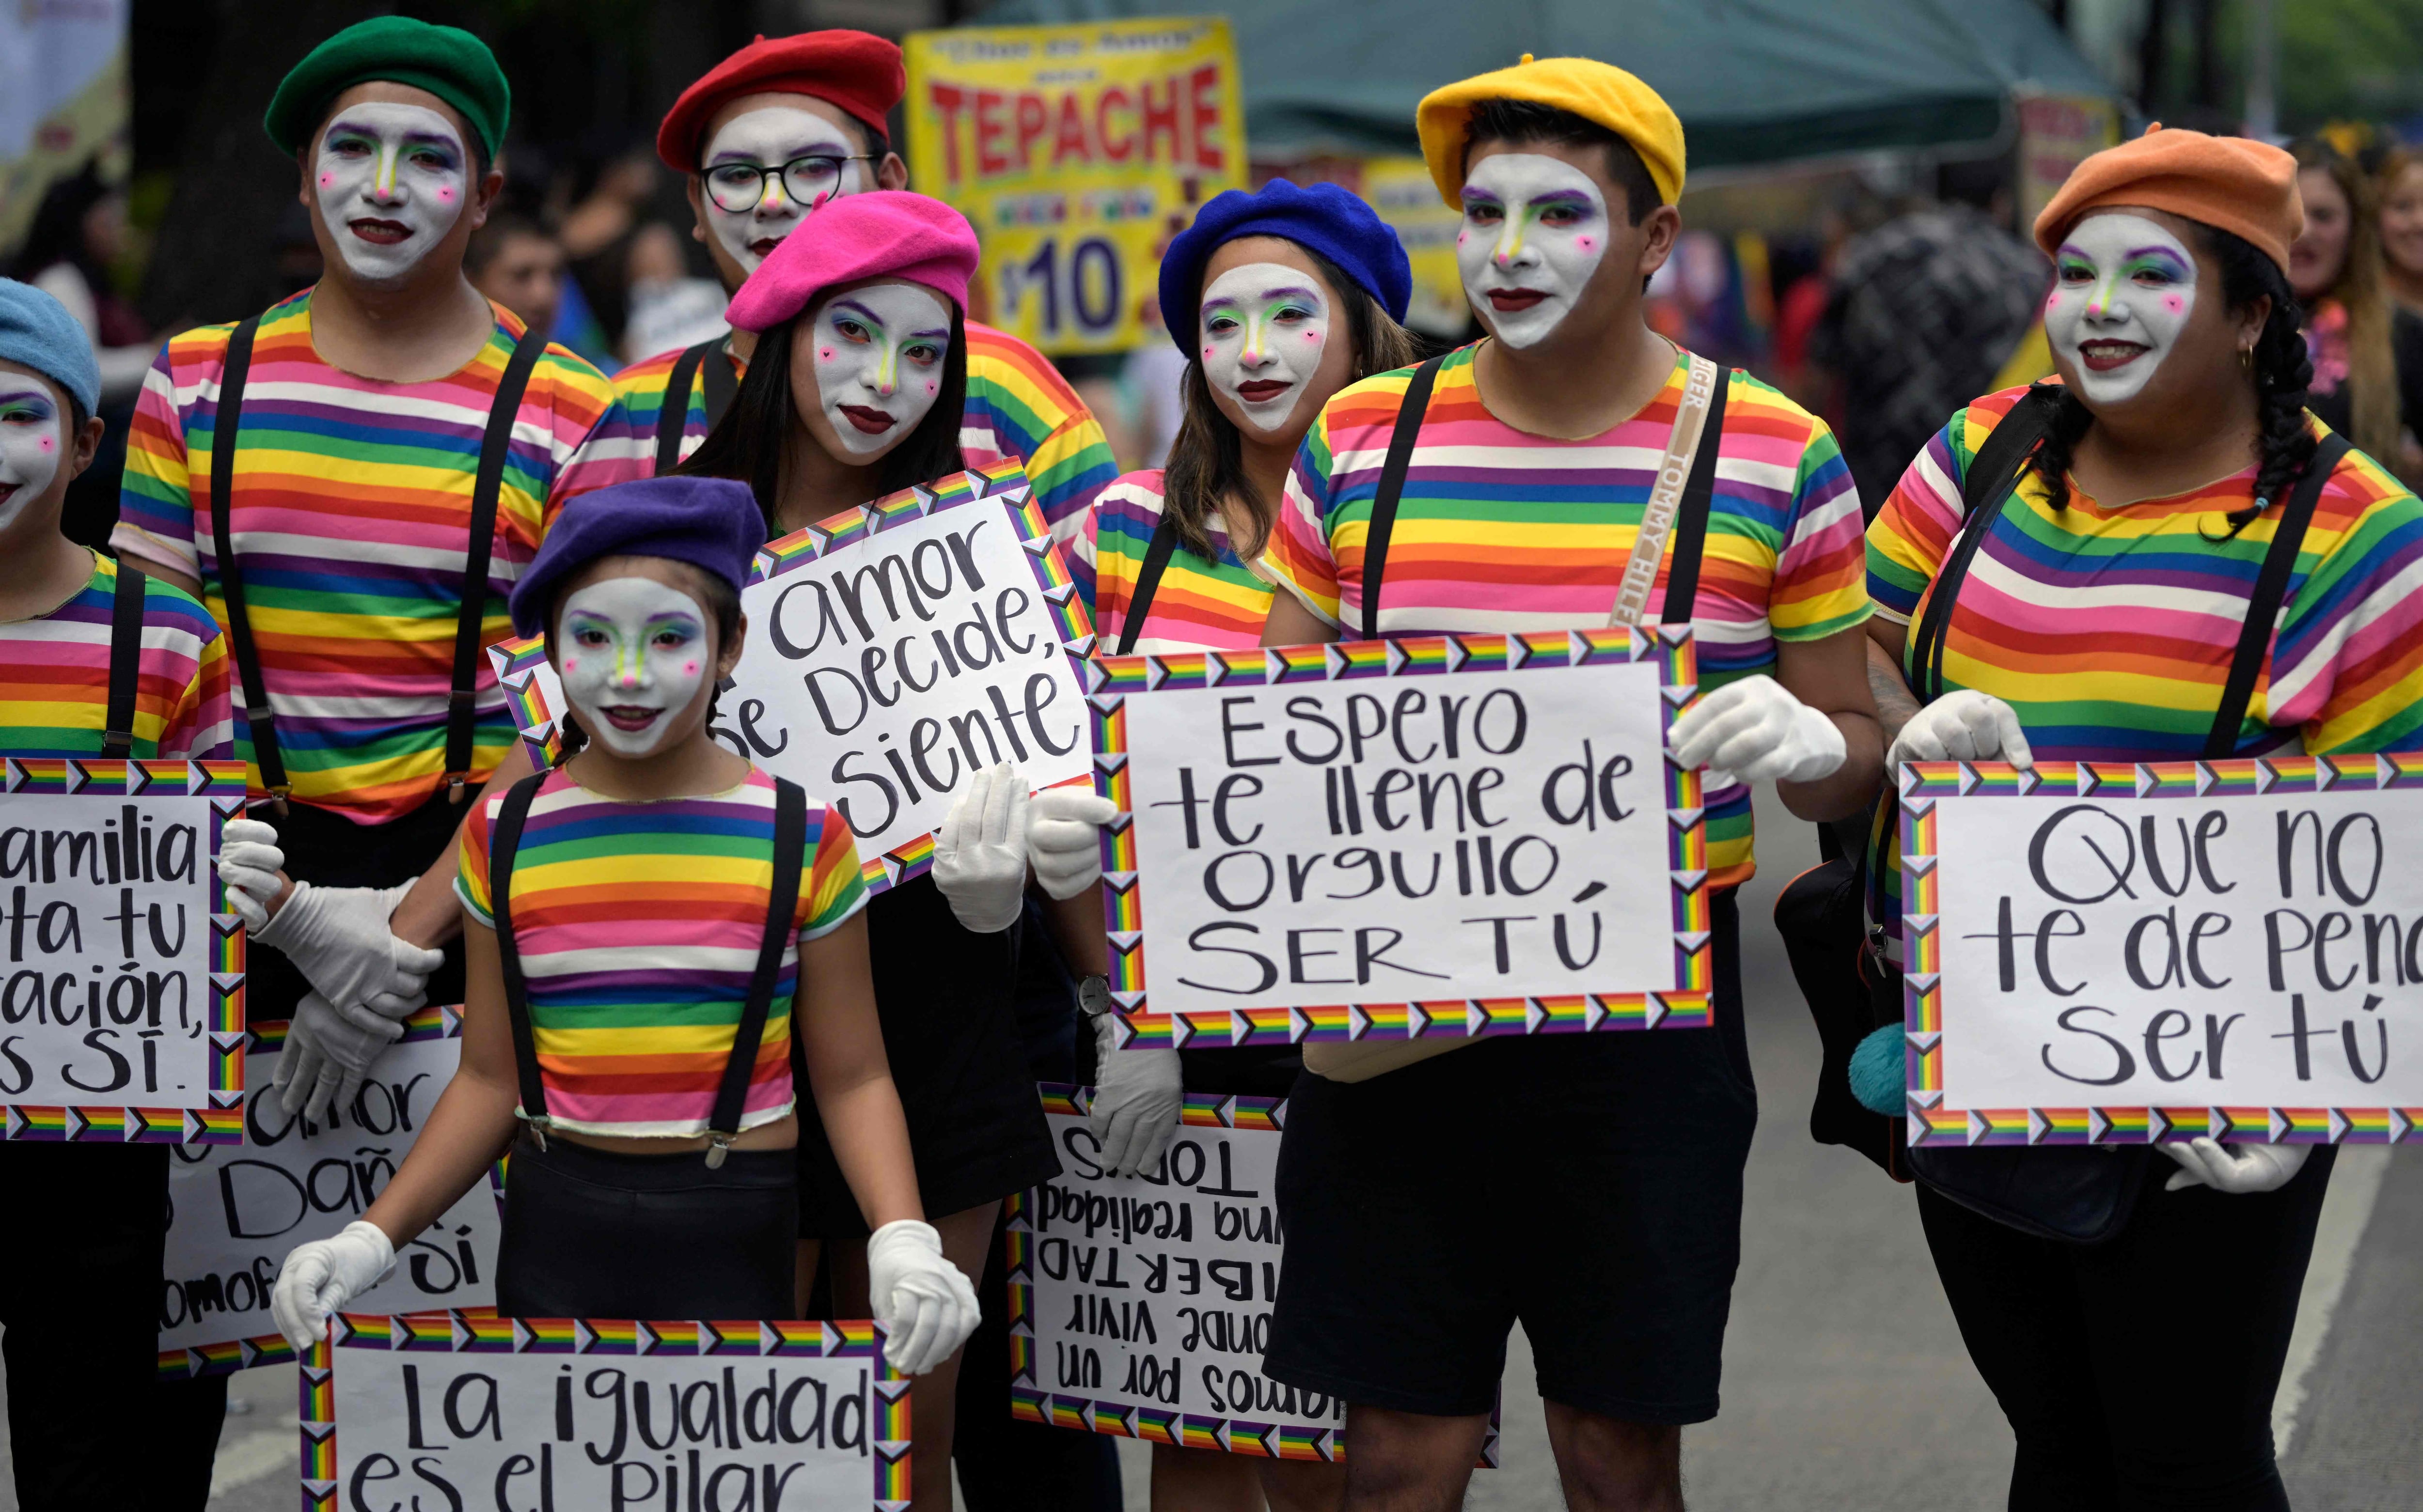 Un grupo de mimos se sumó a la marcha del Pride también por las calles de la avenida Reforma en la ciudad de Mexico.  Con pancartas mostraron varios mensajes de corte positivo.